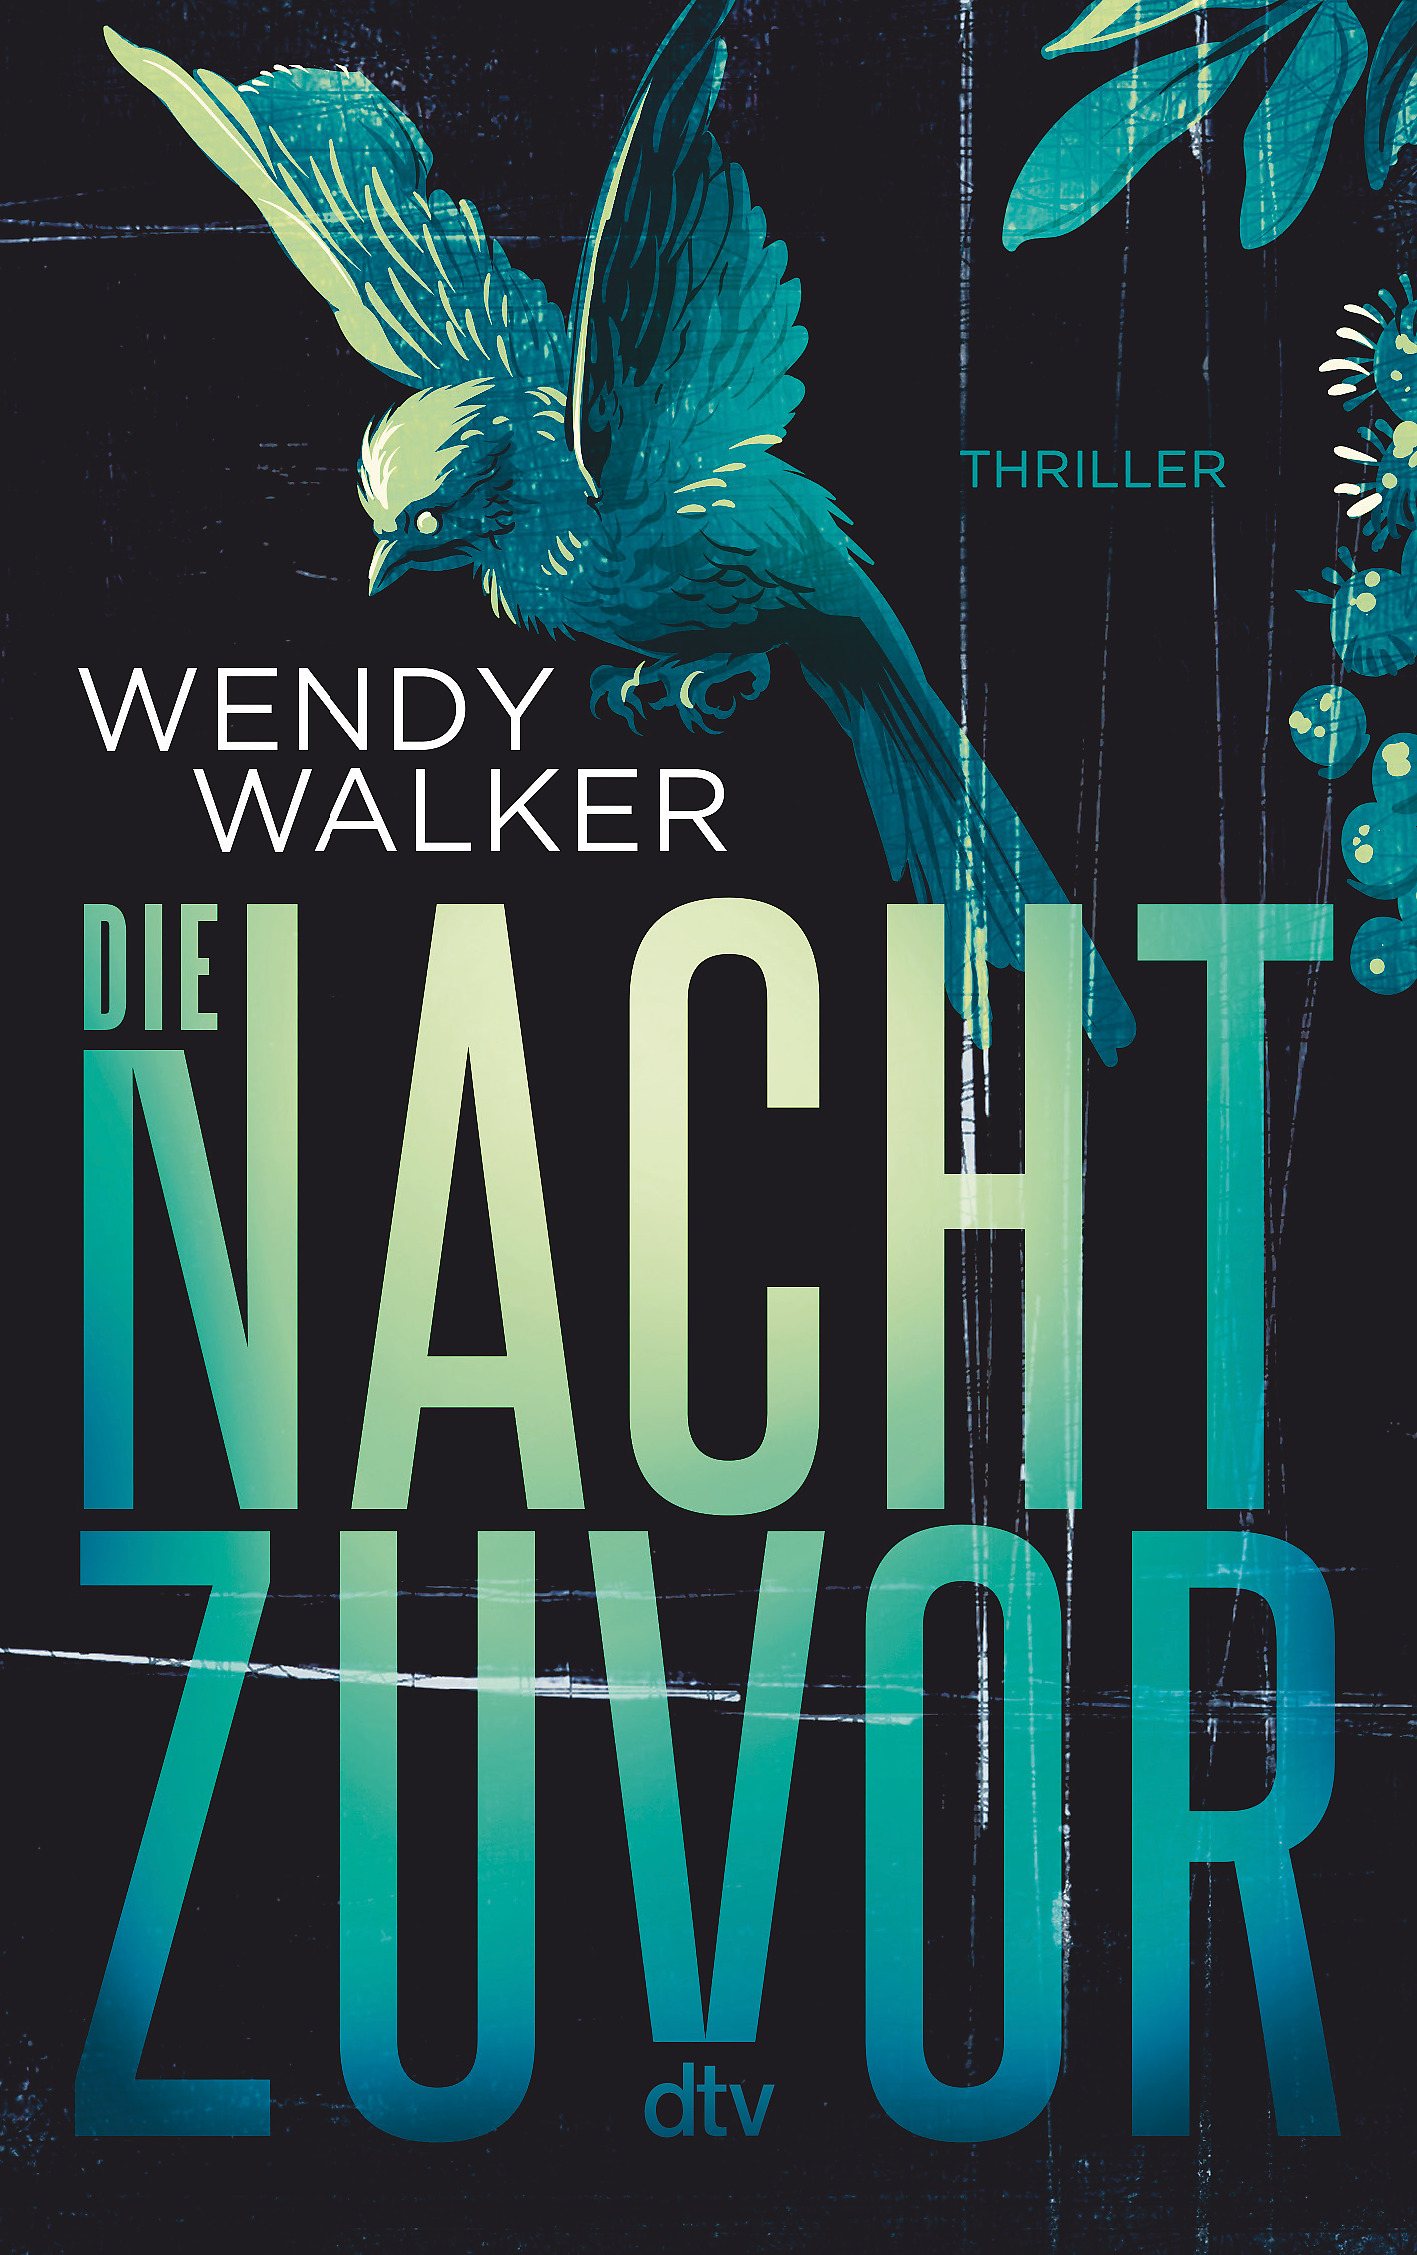 Wendy Walker: Die Nacht zuvor